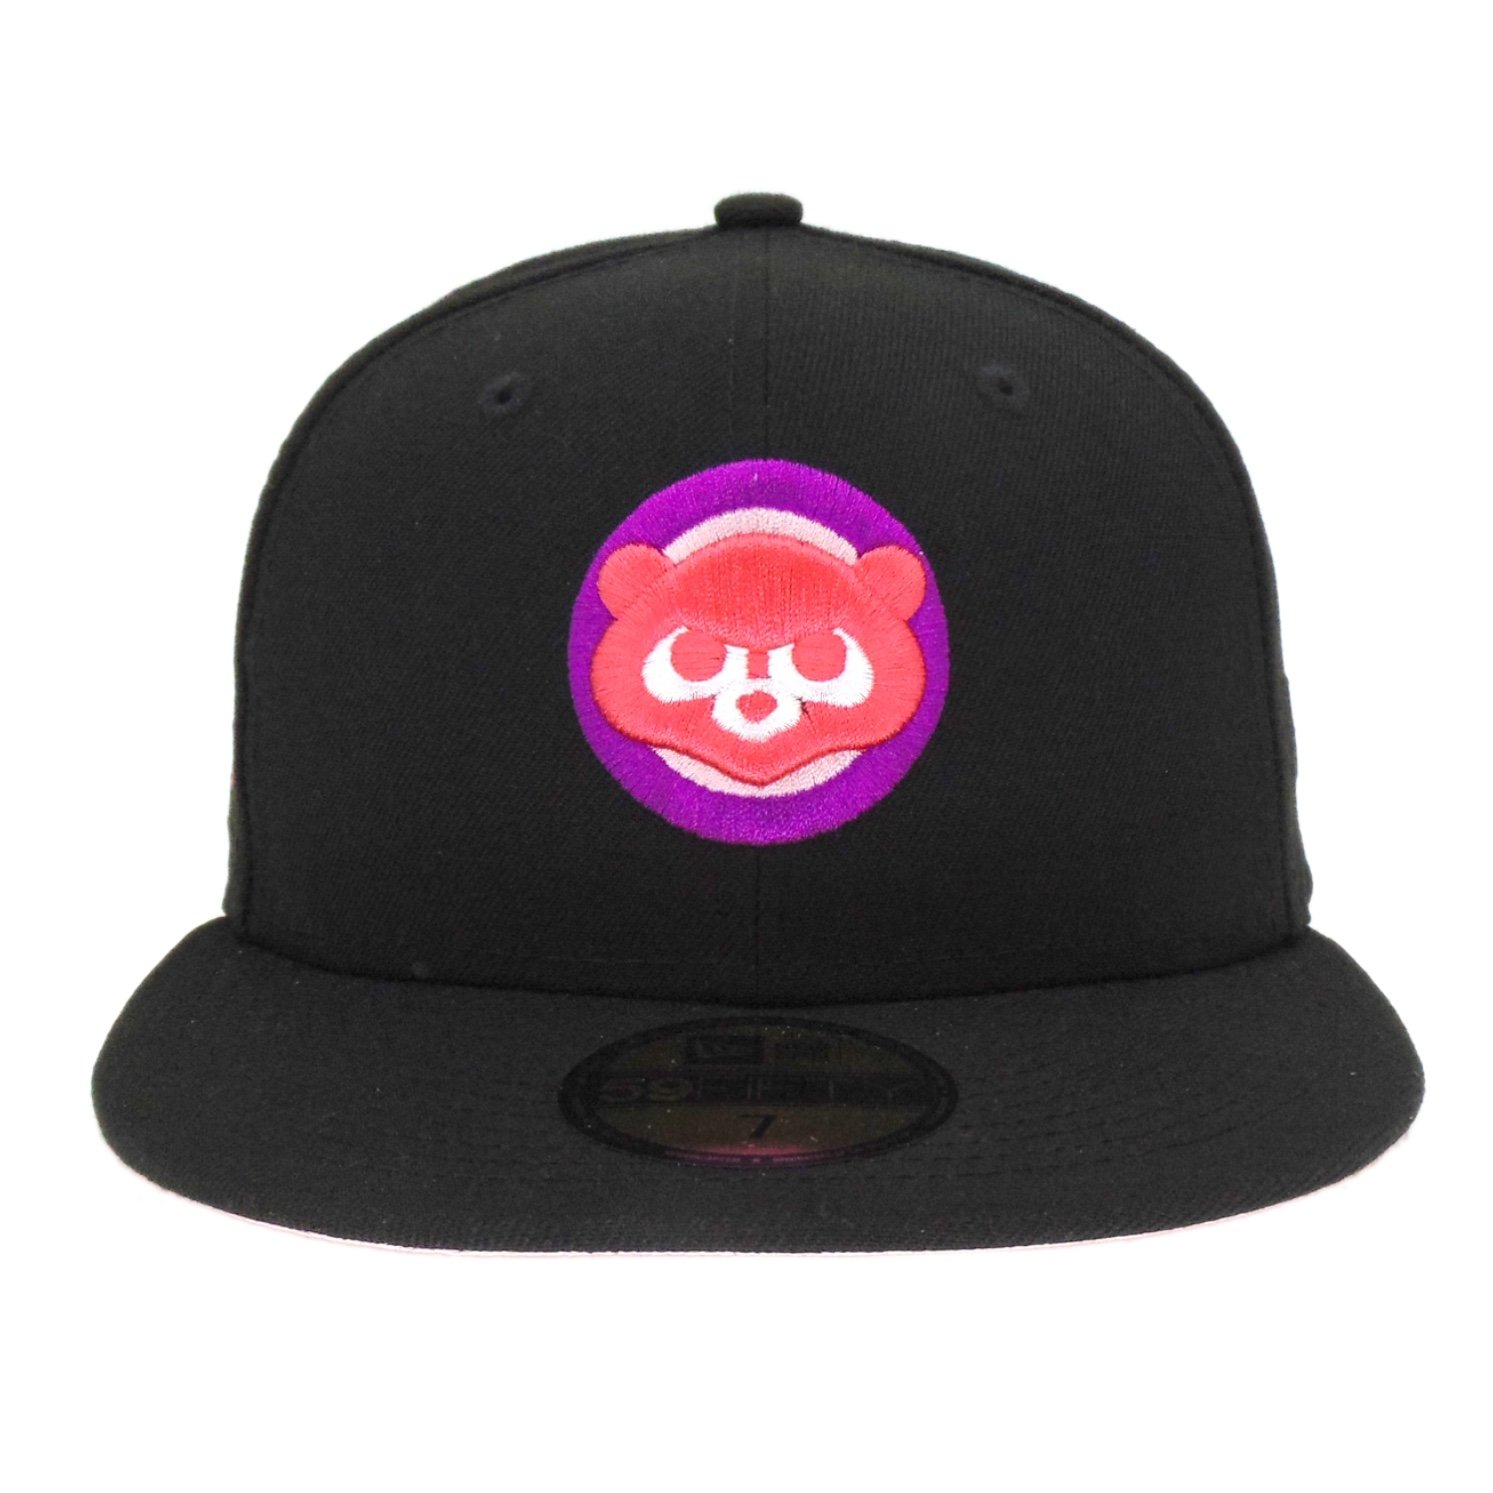 Cap  Snapback  "CITY" Caps New York Köln Miami Chicago Baseball schwarz Kappe 